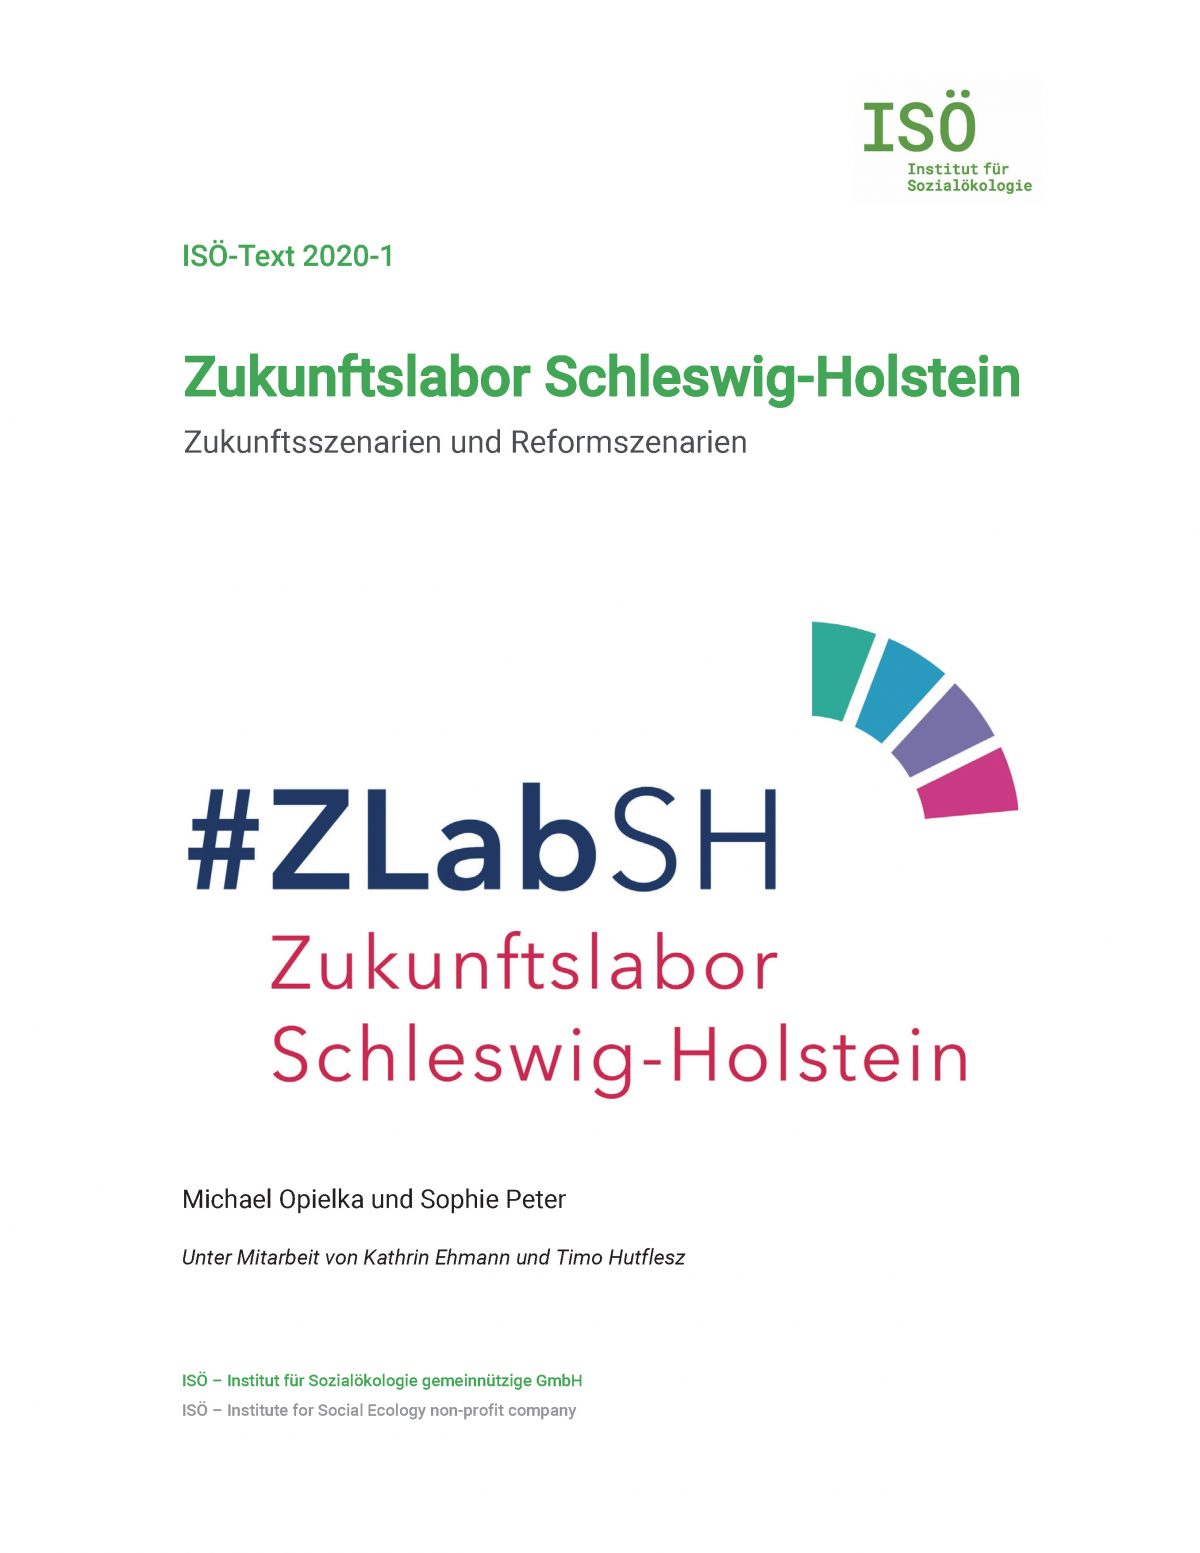 Michael Opielka/Sophie Peter, Zukunftslabor Schleswig-Holstein. Zukunftsszenarien und Reformszenarien (ISÖ-Text 2020-1) 